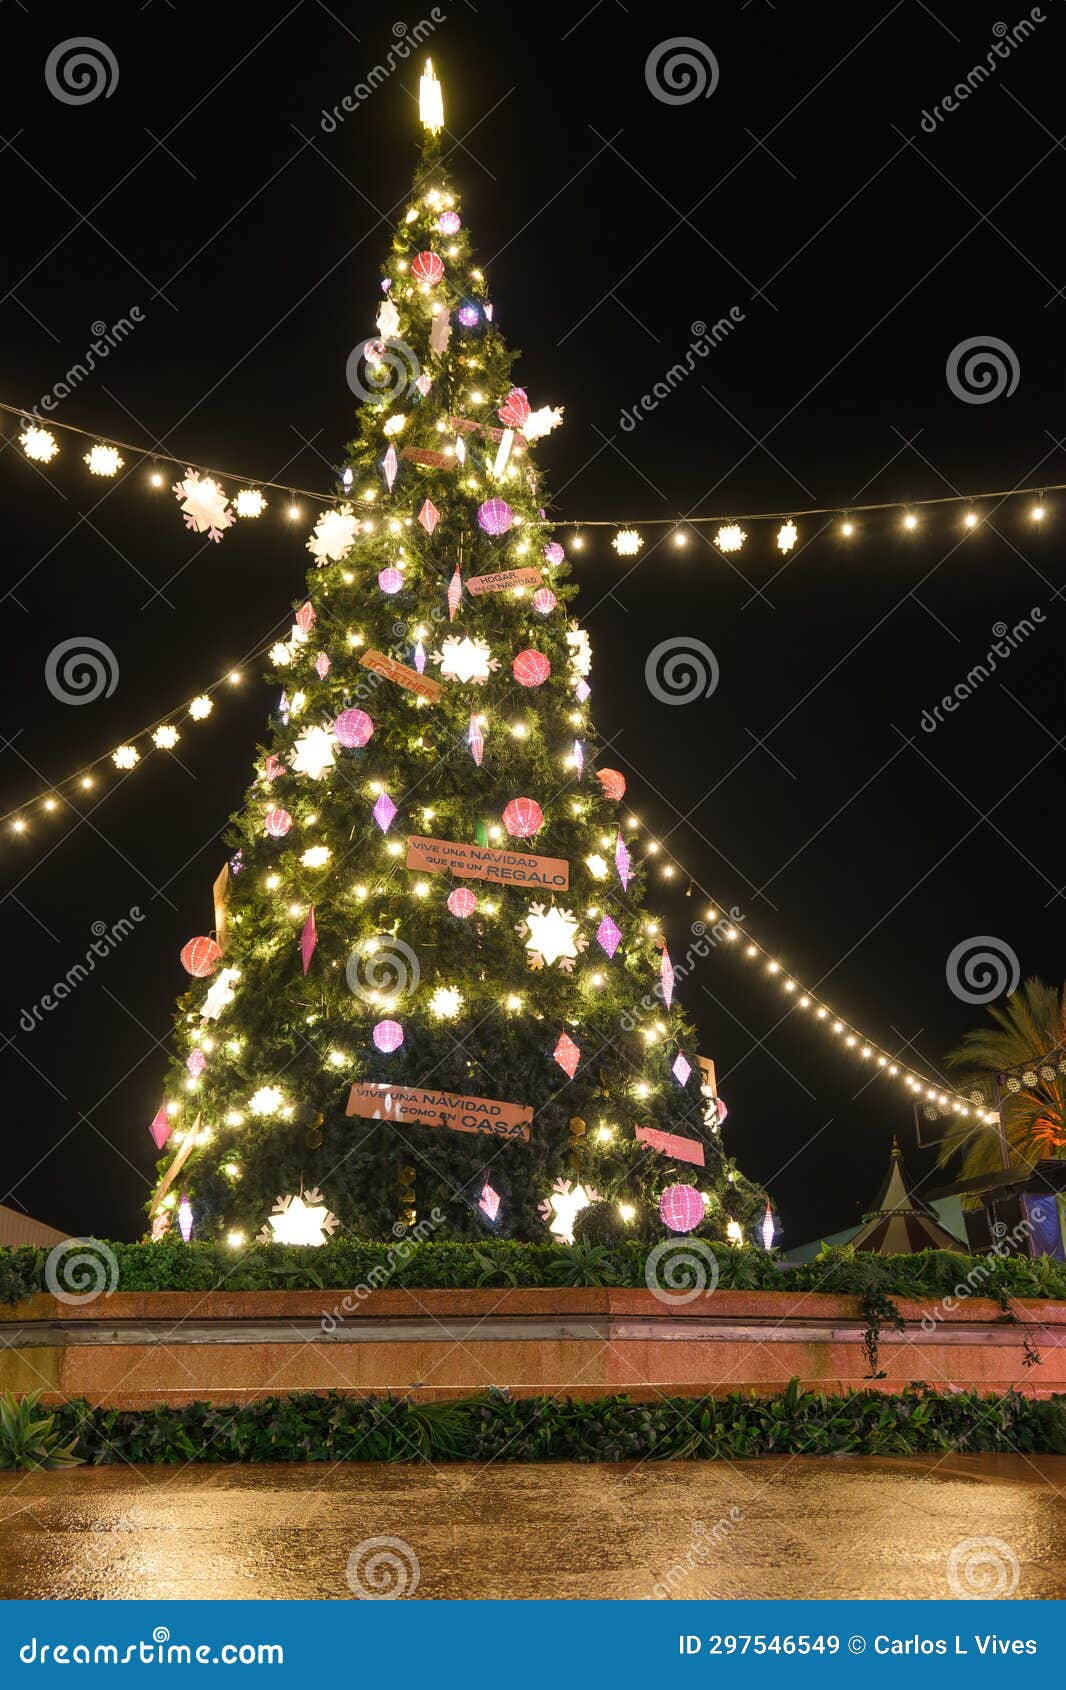 christmas tree at pra a do com rcio in mallorca